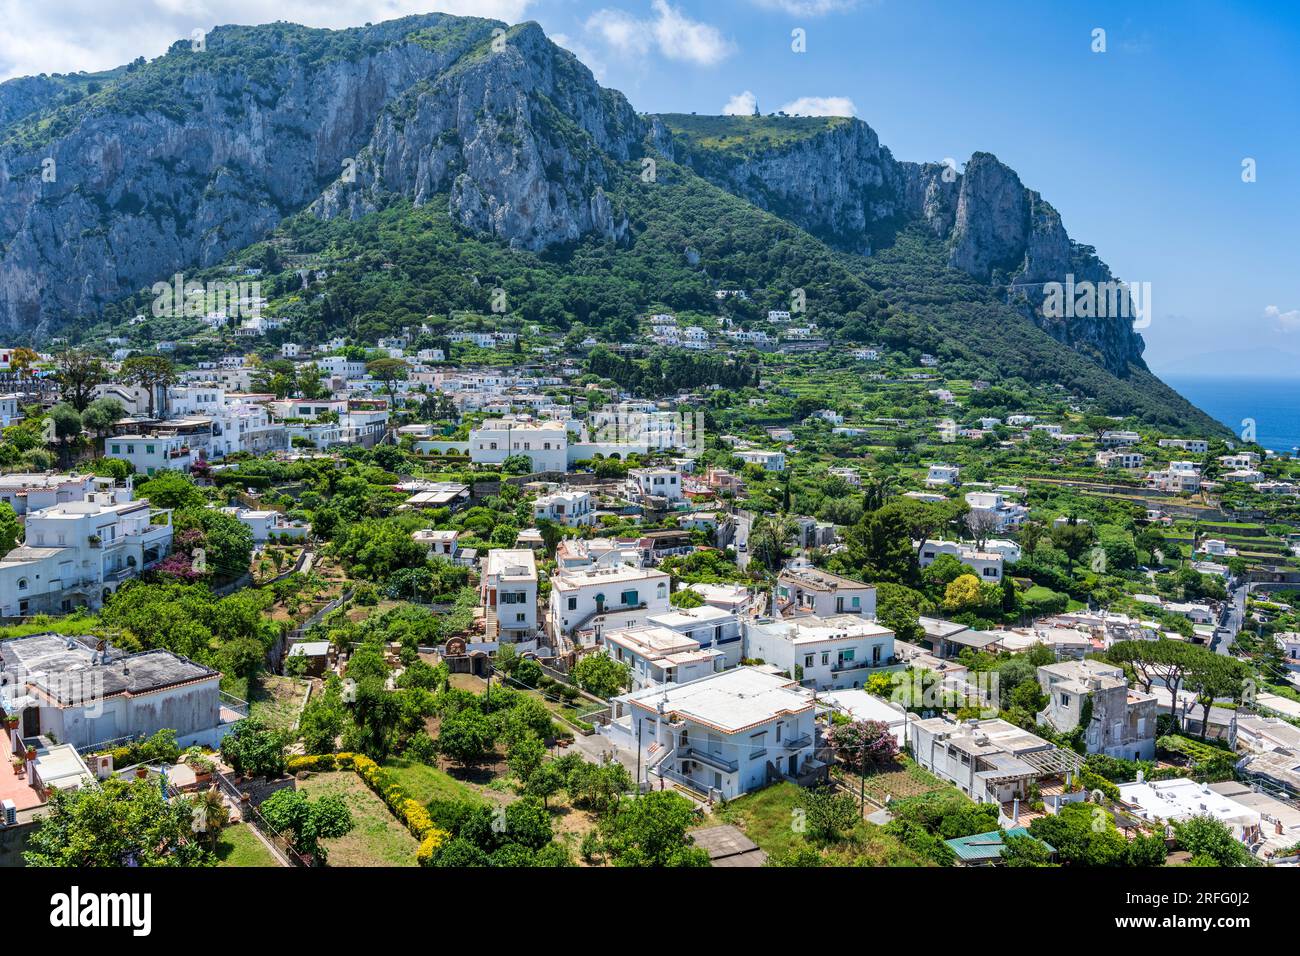 Blick auf die Stadt Anacapri und den zerklüfteten Gipfel des Monte Solaro auf der Insel Capri im Golf von Neapel in der italienischen Region Kampanien Stockfoto